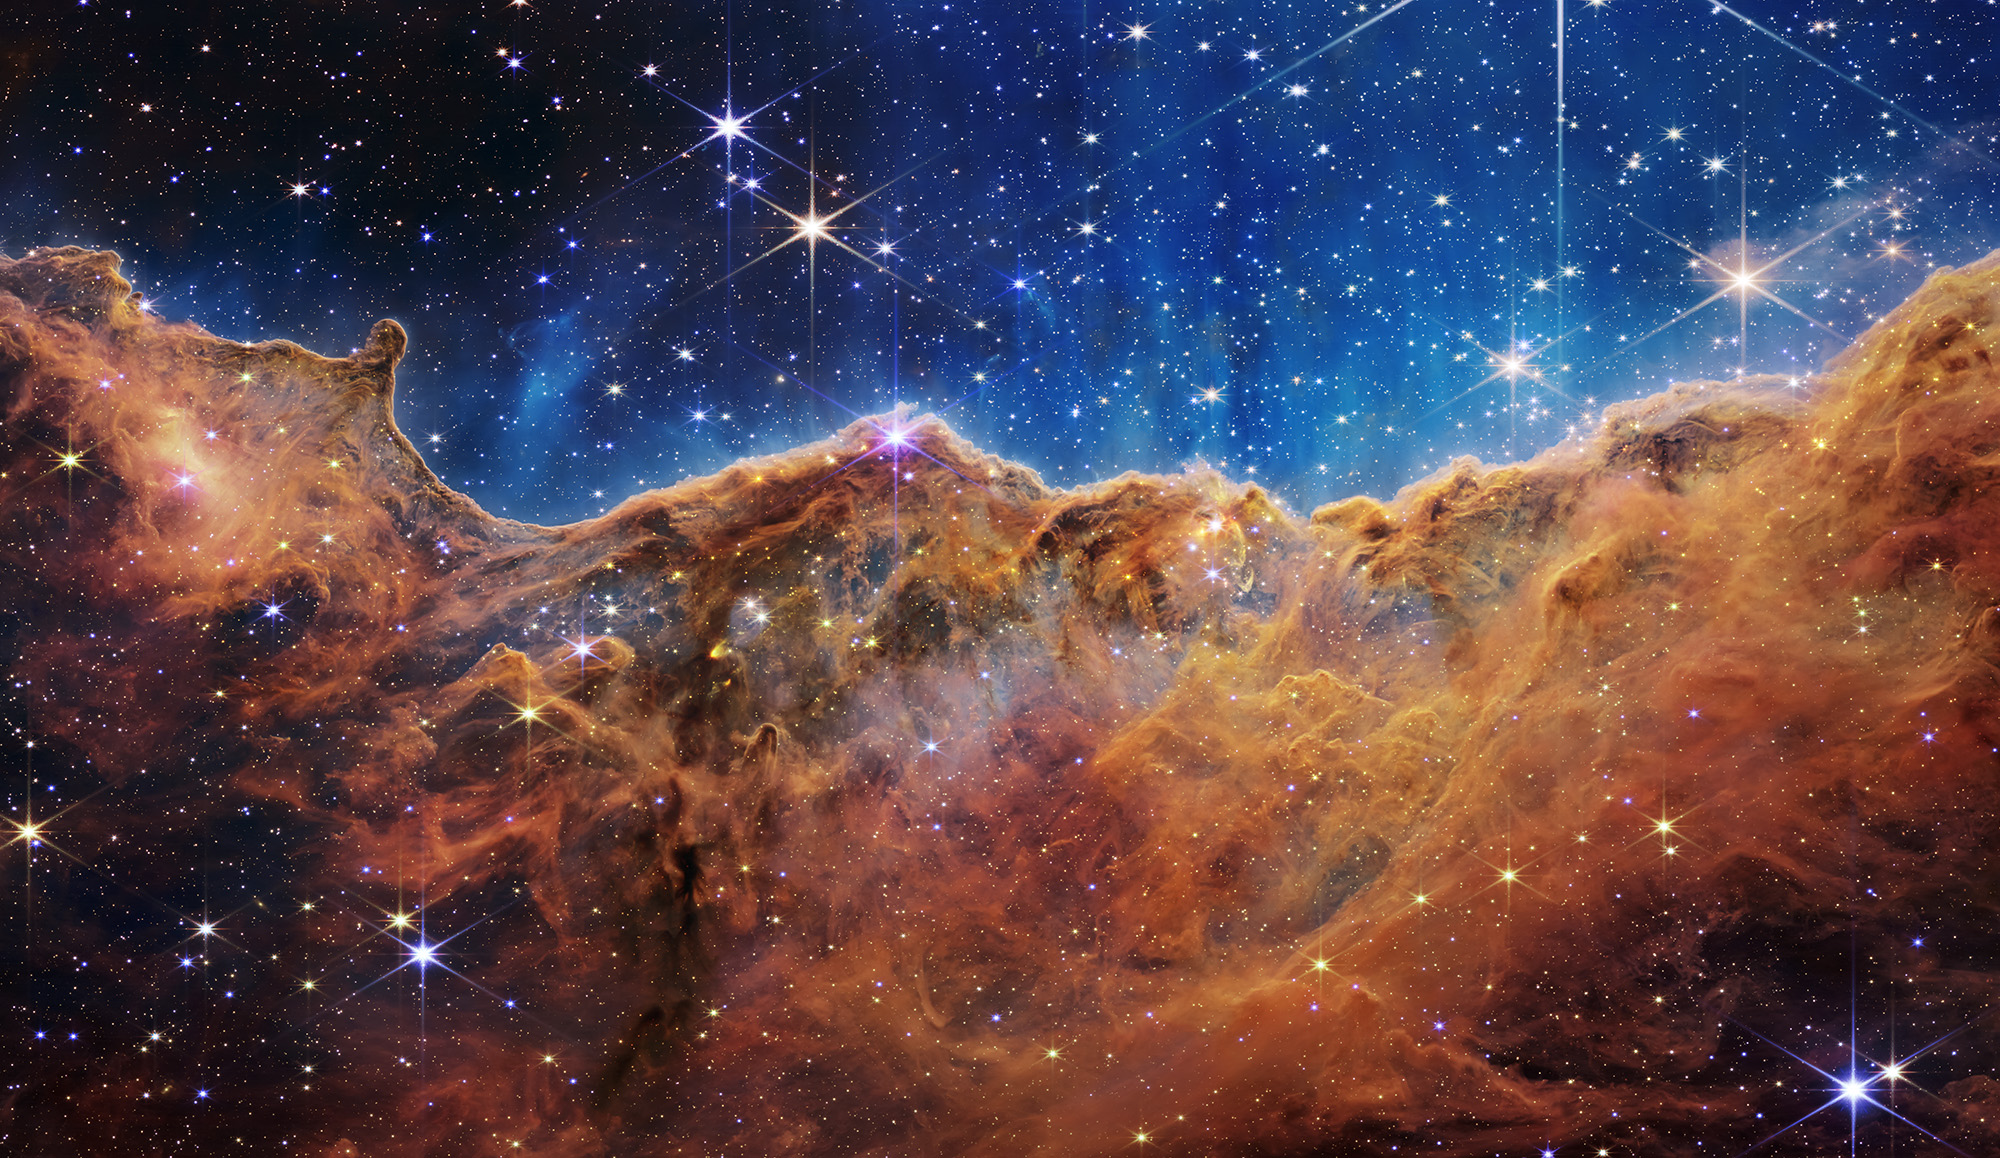 Cosmic Cliffs” in the Carina Nebula